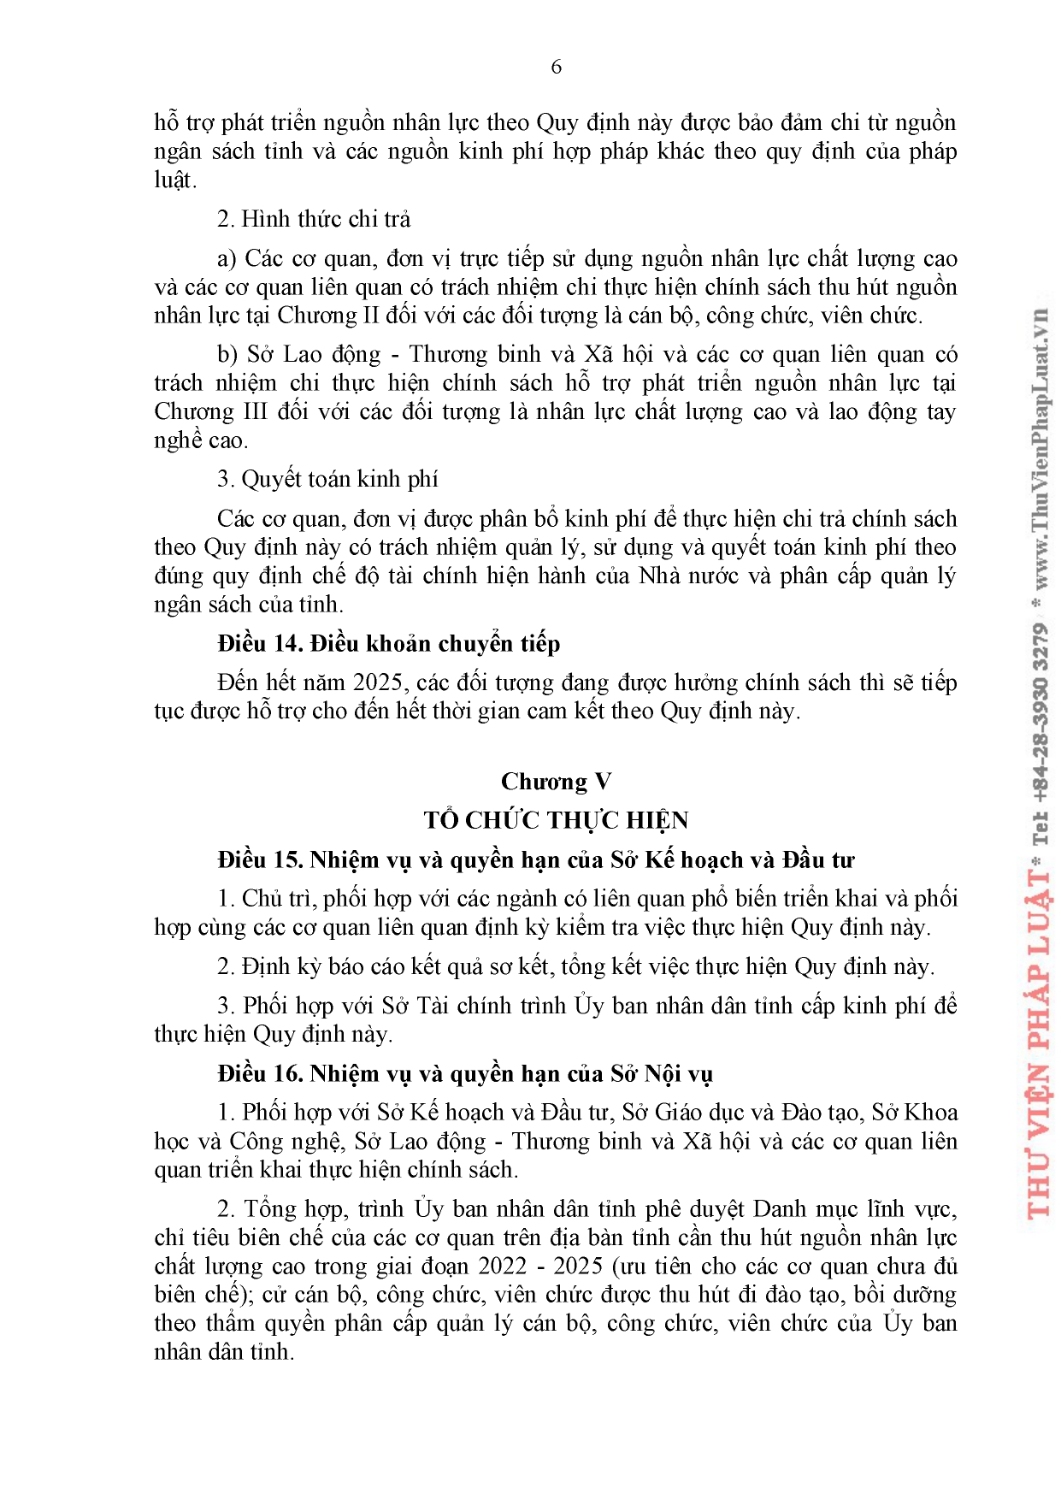 QD 47 quy dinh chinh sach thu hut cua UBND tinh (1) page 0008